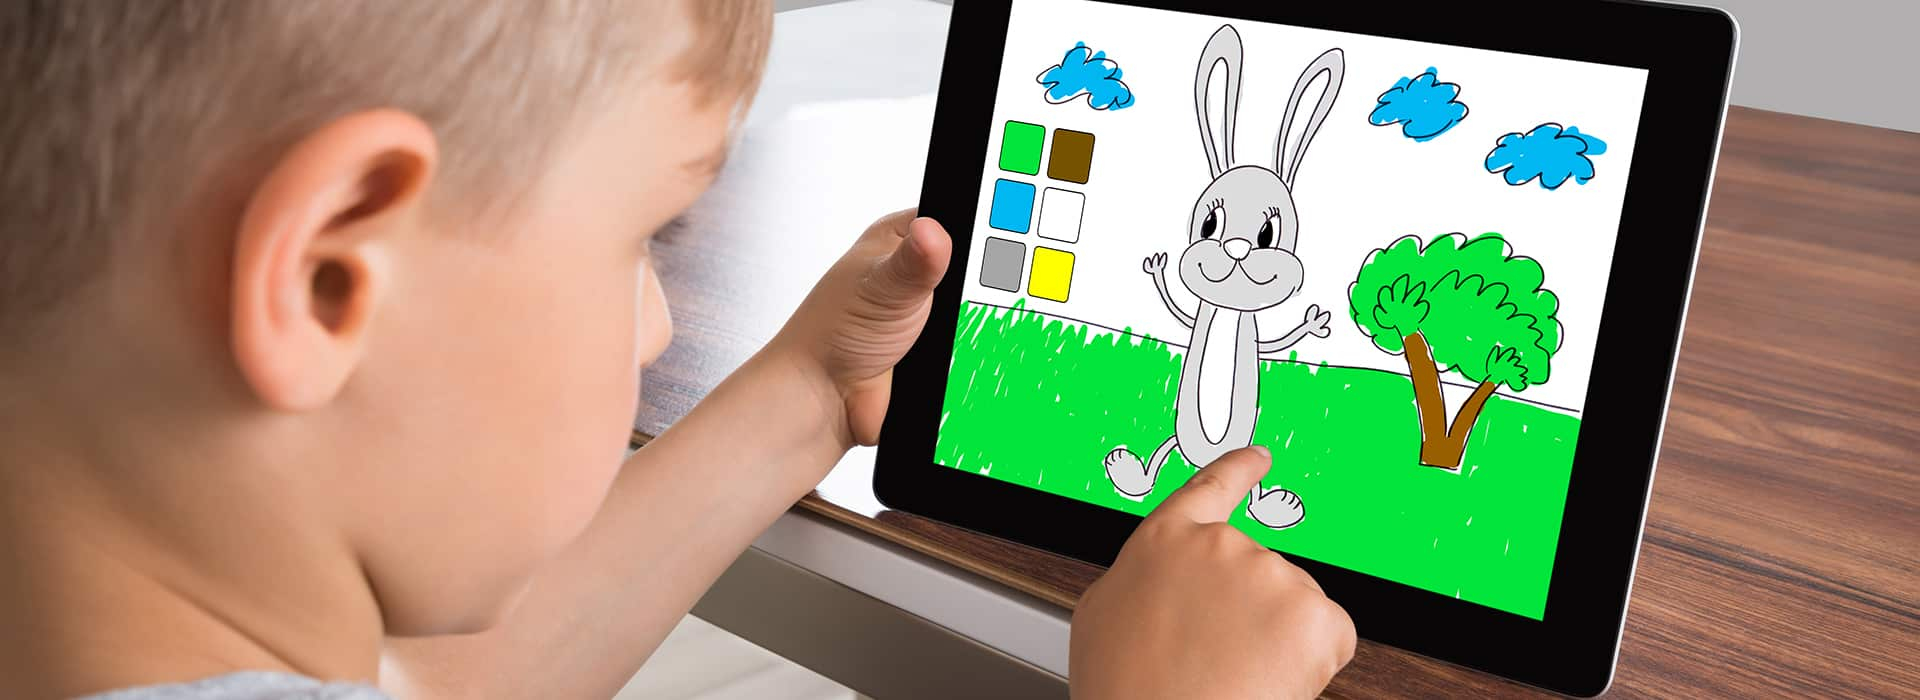 Tablette Enfant : Voici Les Meilleurs Modèles À Offrir En 2020 intérieur Jeux Pour Tablette Gratuit